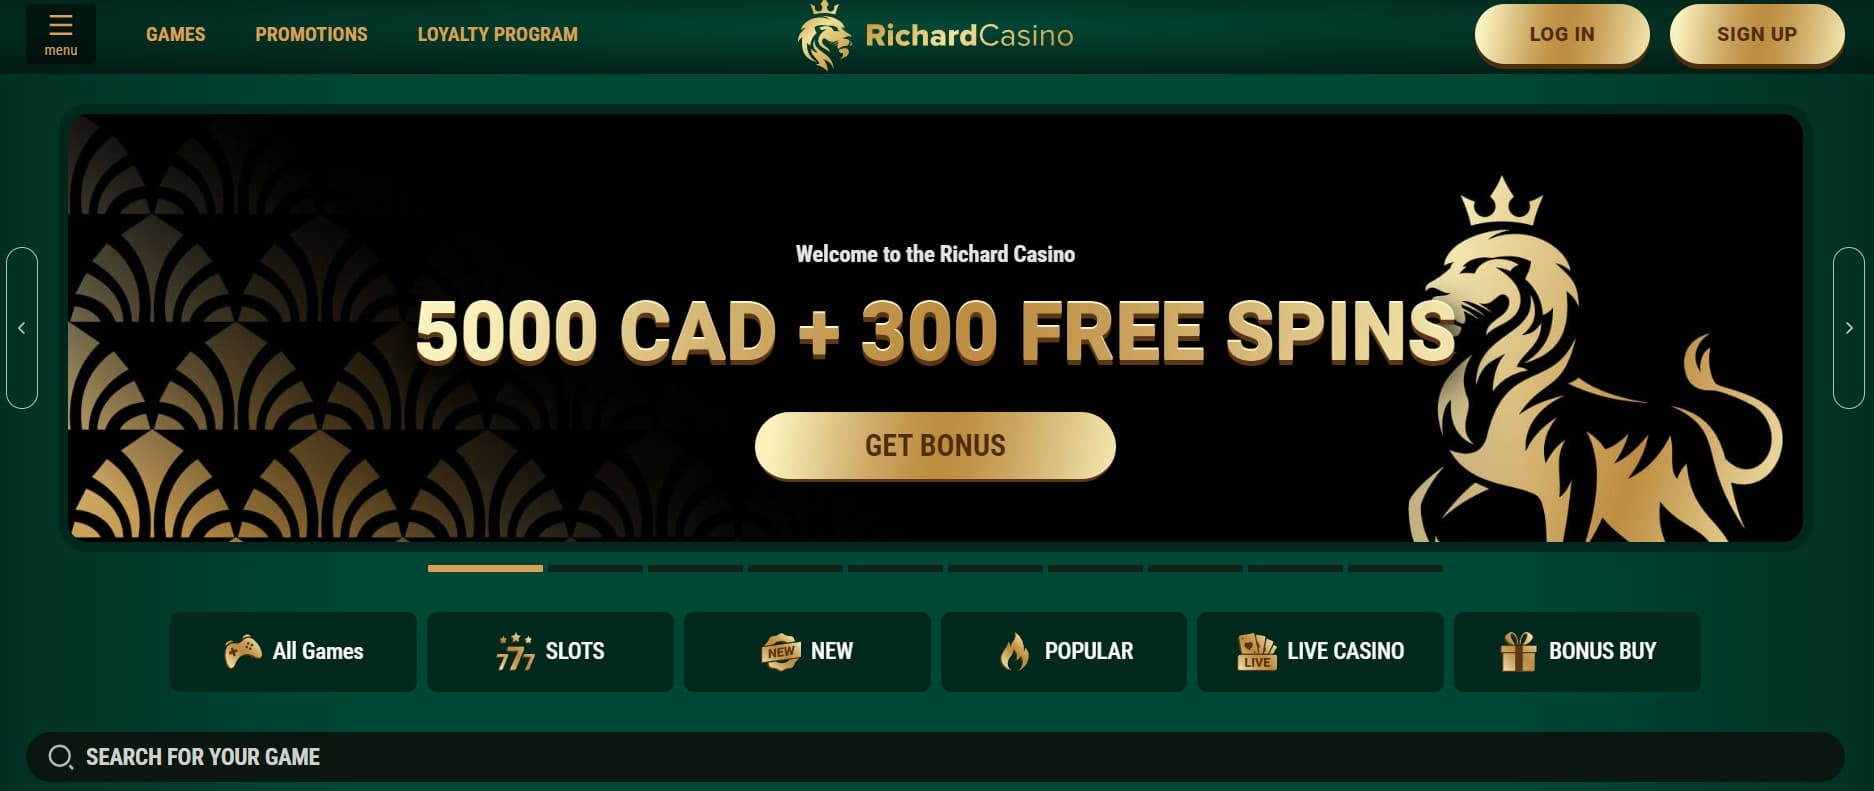 richard casino main page